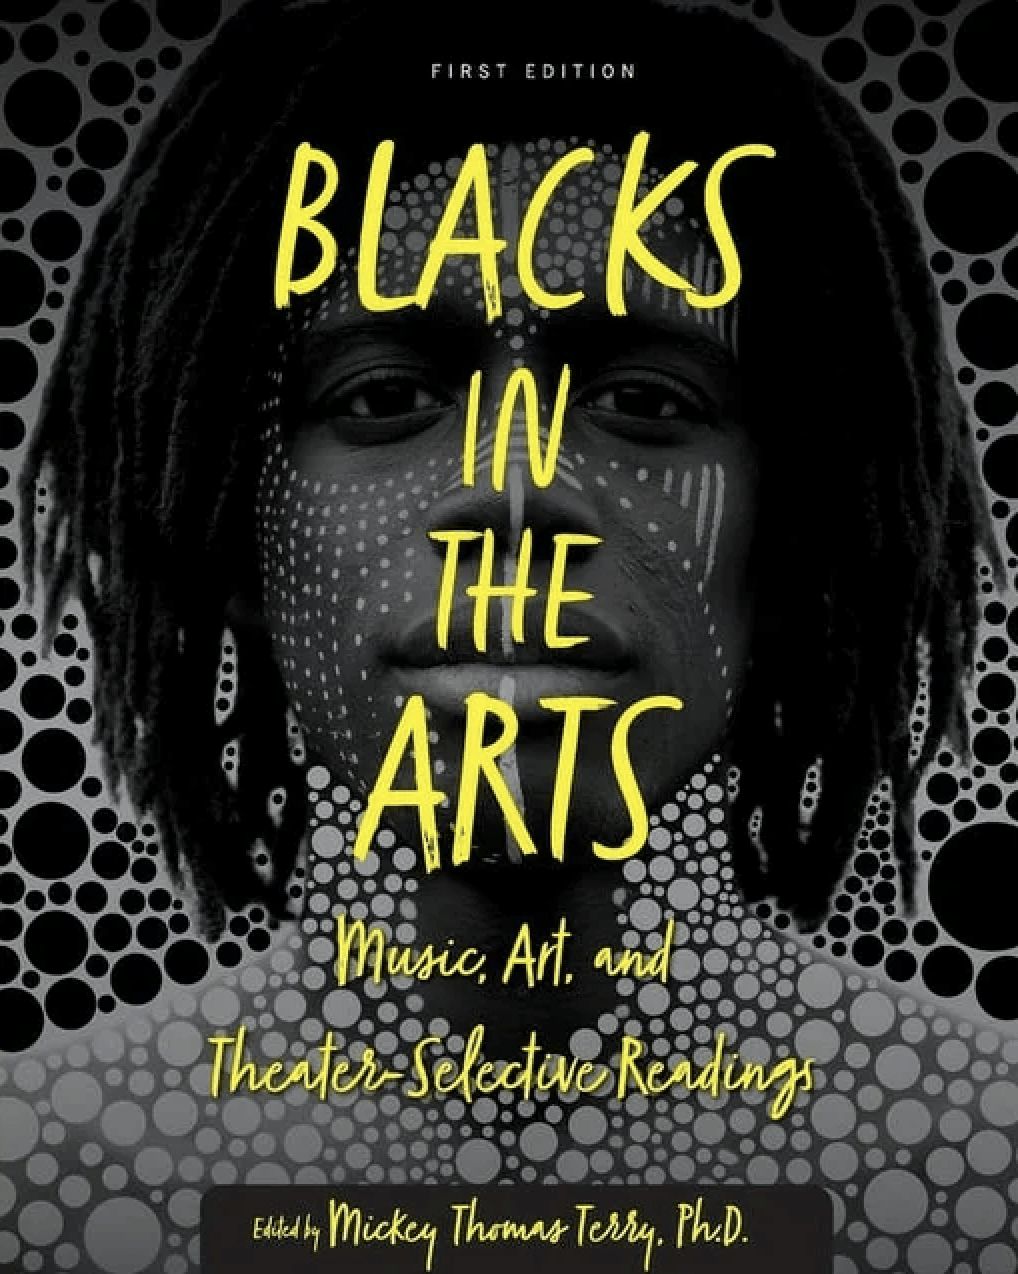 Blacks in the ARts